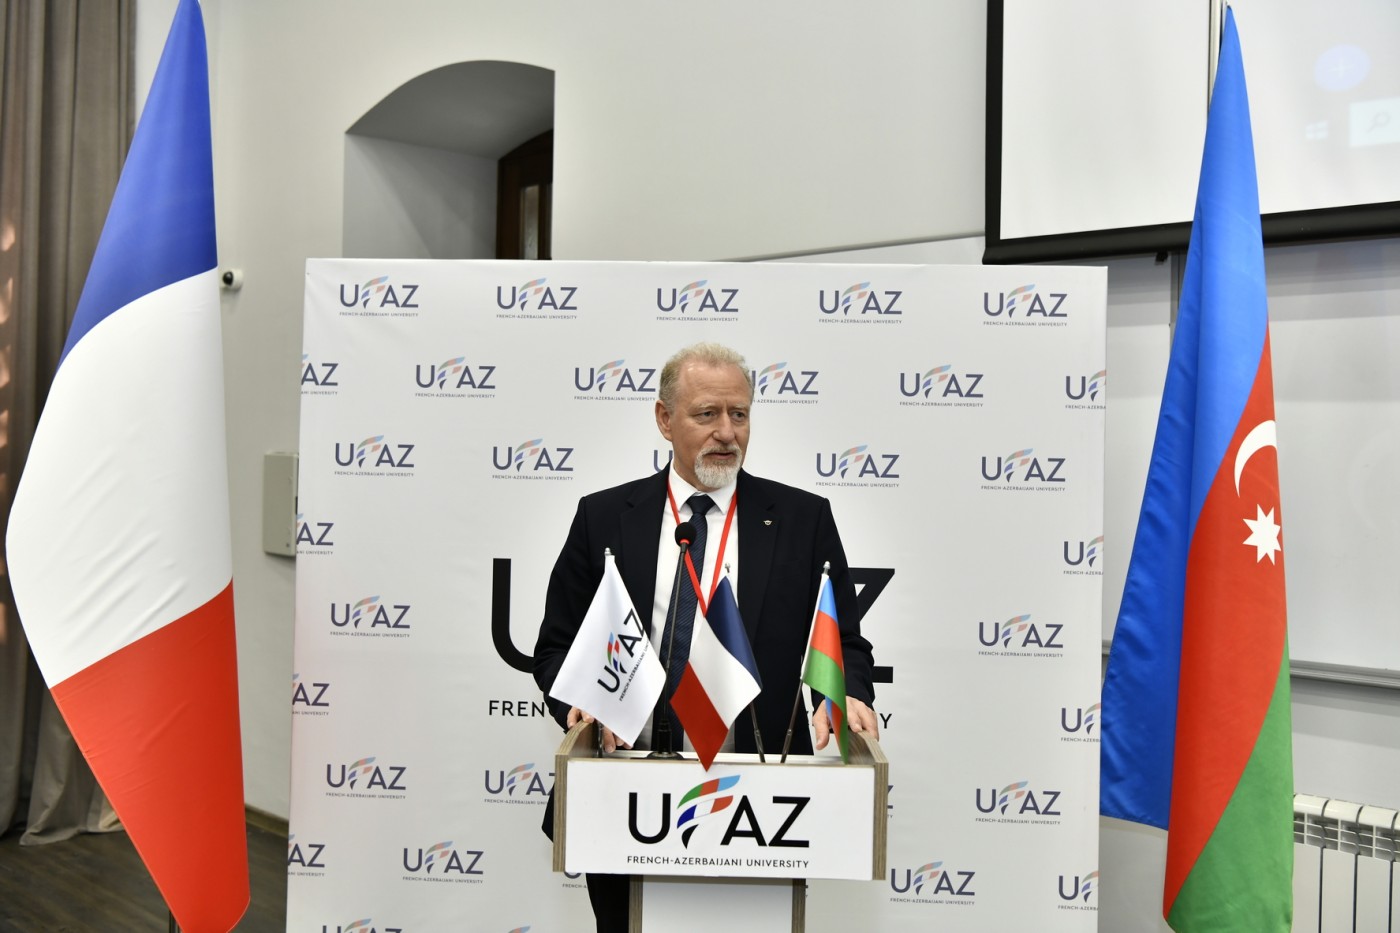 UFAZ-da Beynəlxalq elmi konfrans öz işinə başlayıb - FOTOLAR